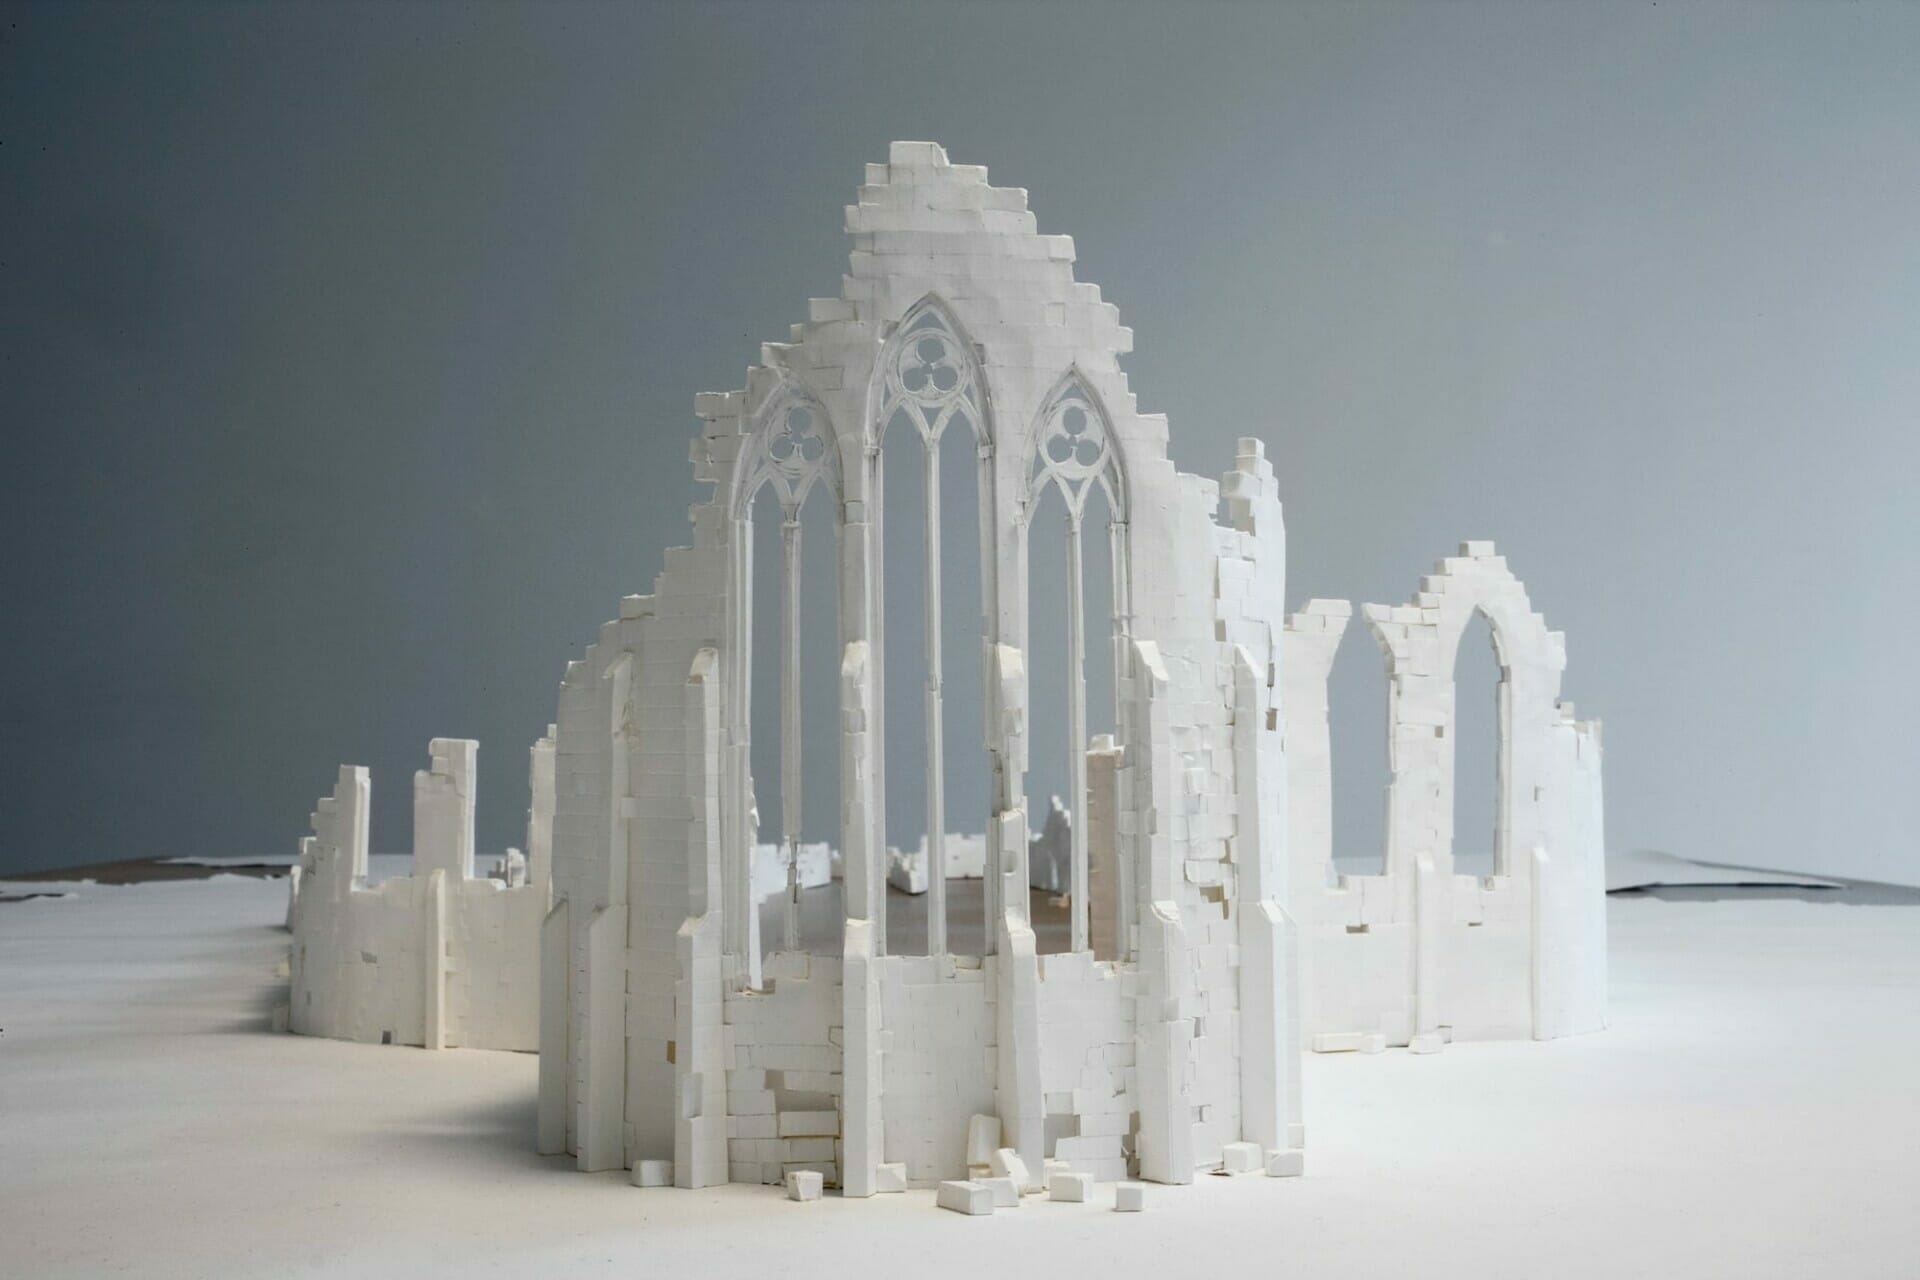 Peter Callesen maakt indrukwekkende bouwwerken uit 1 vel papier